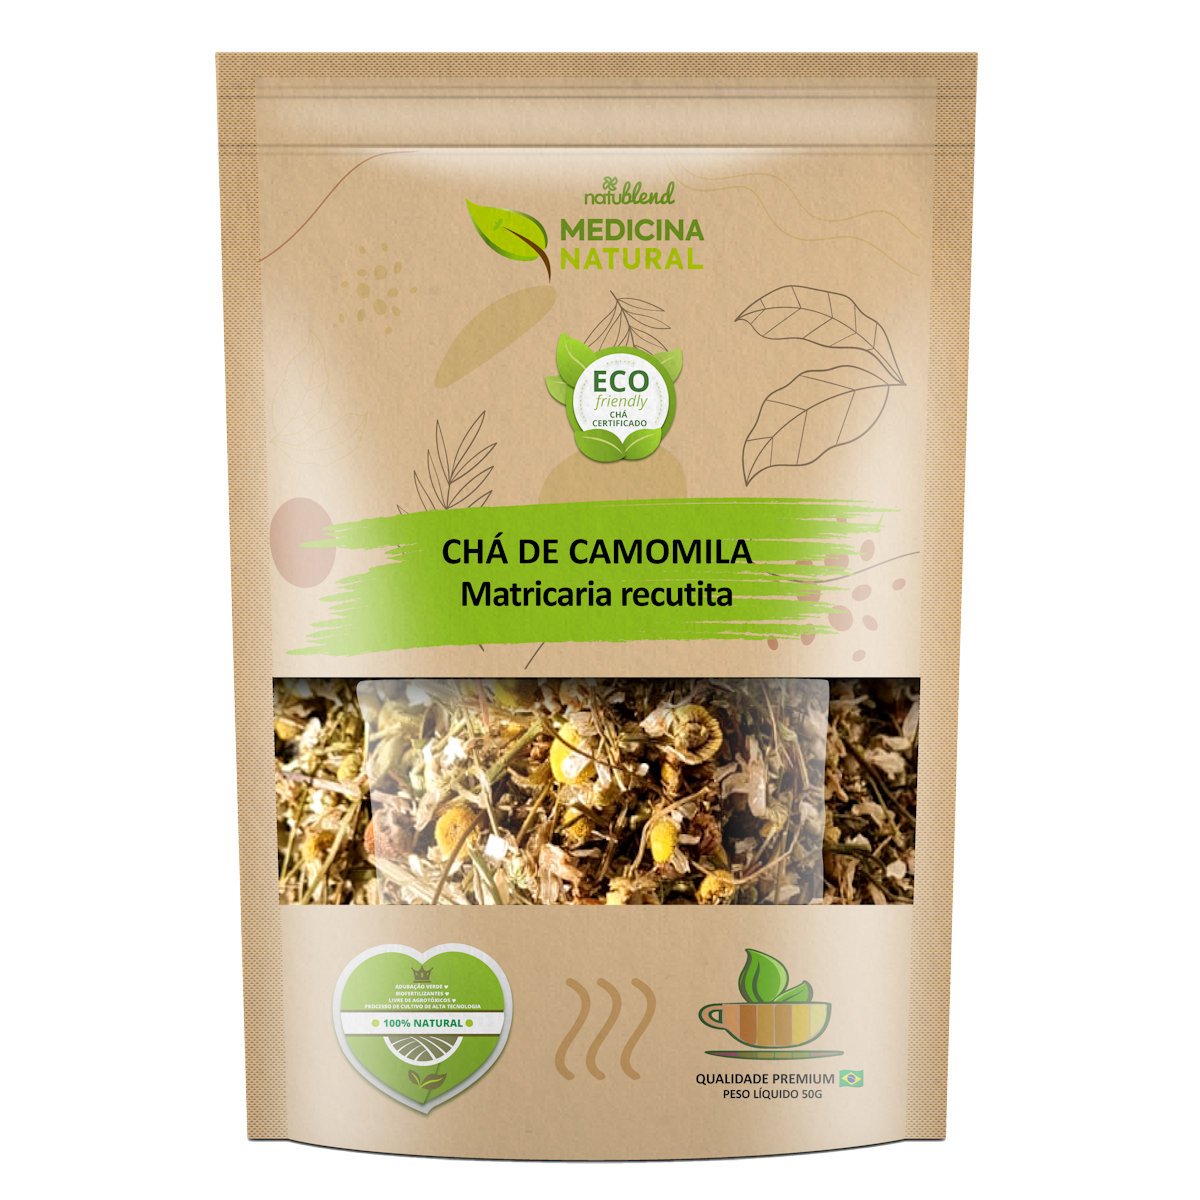 Chá de Camomila - Matricaria recutita - Medicina Natural